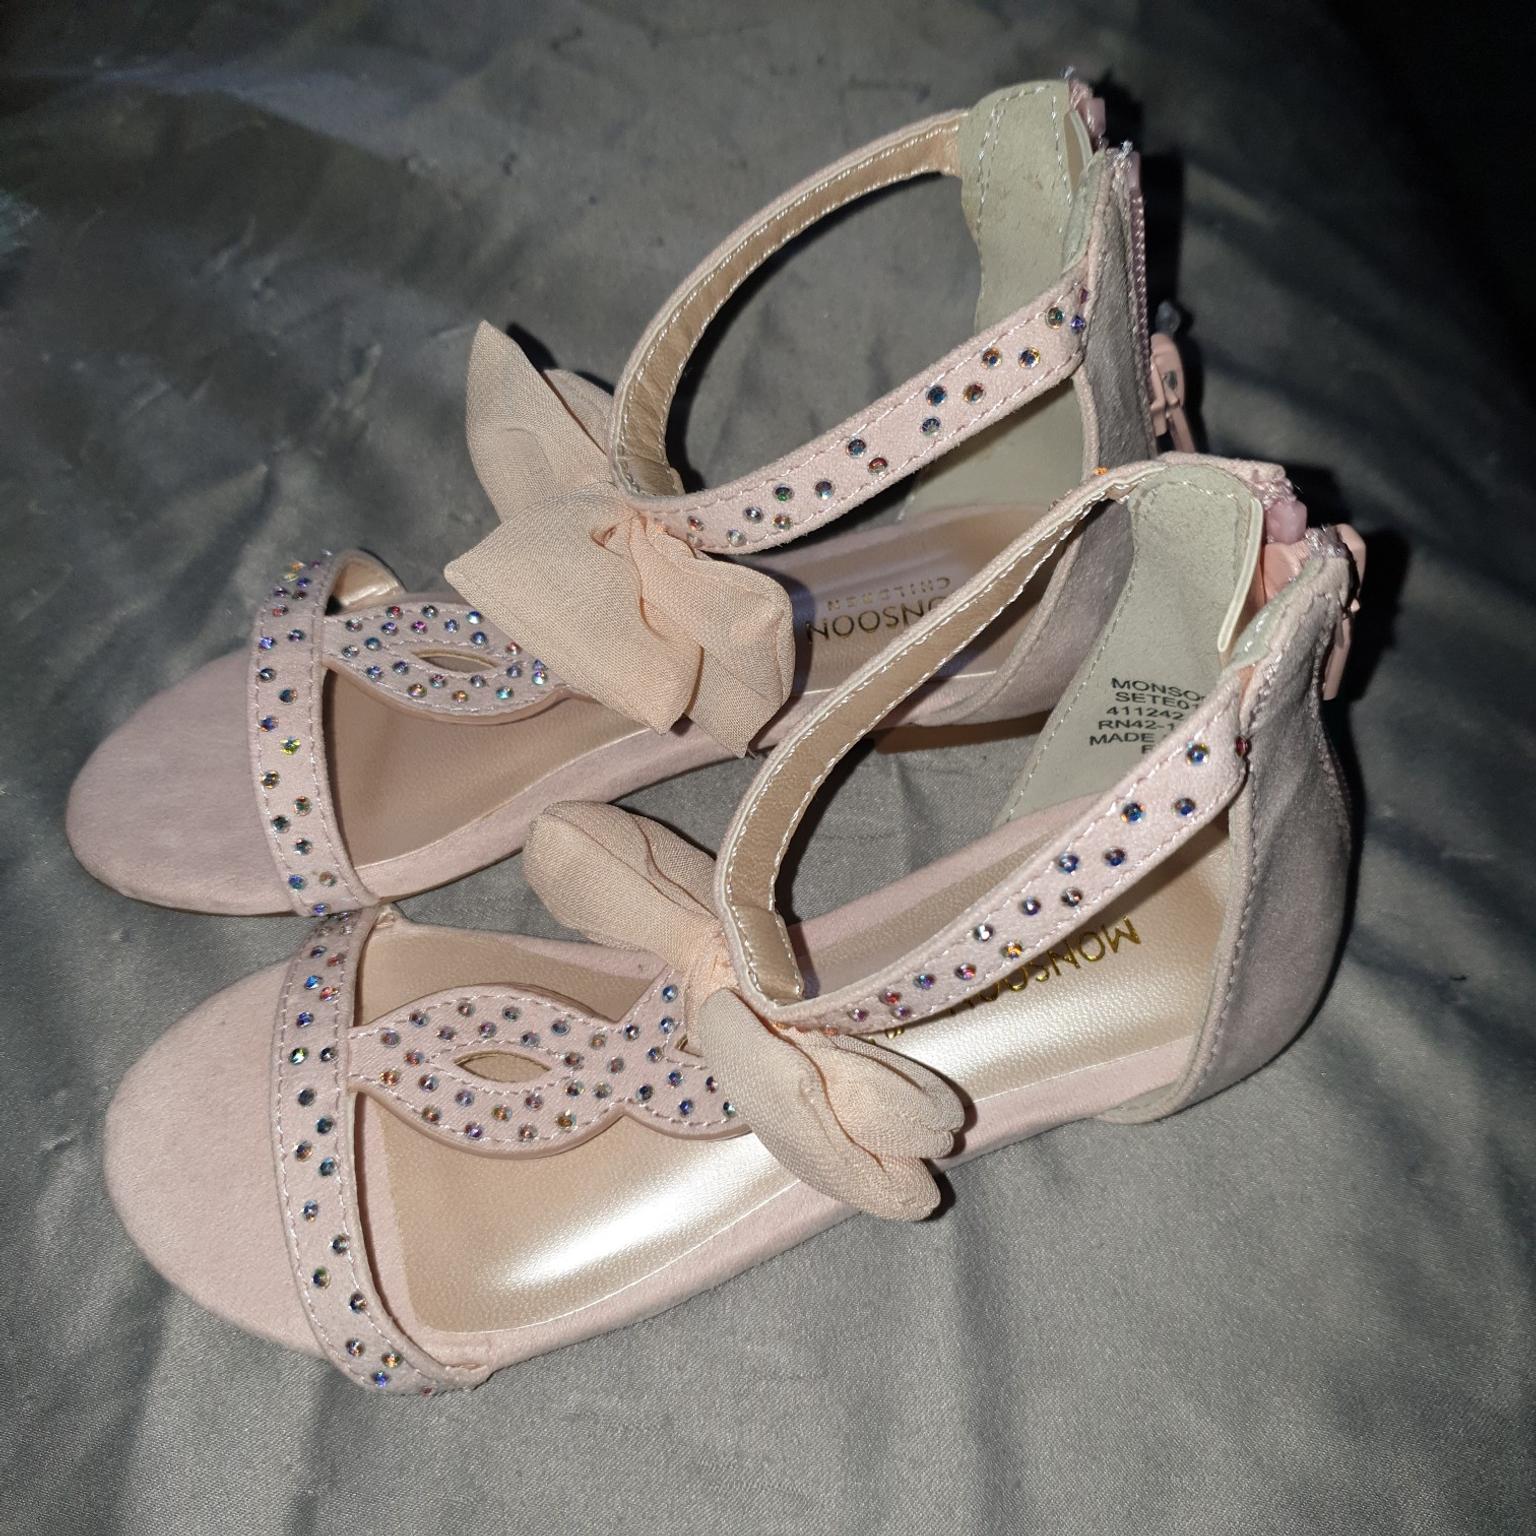 diamante bow sandals